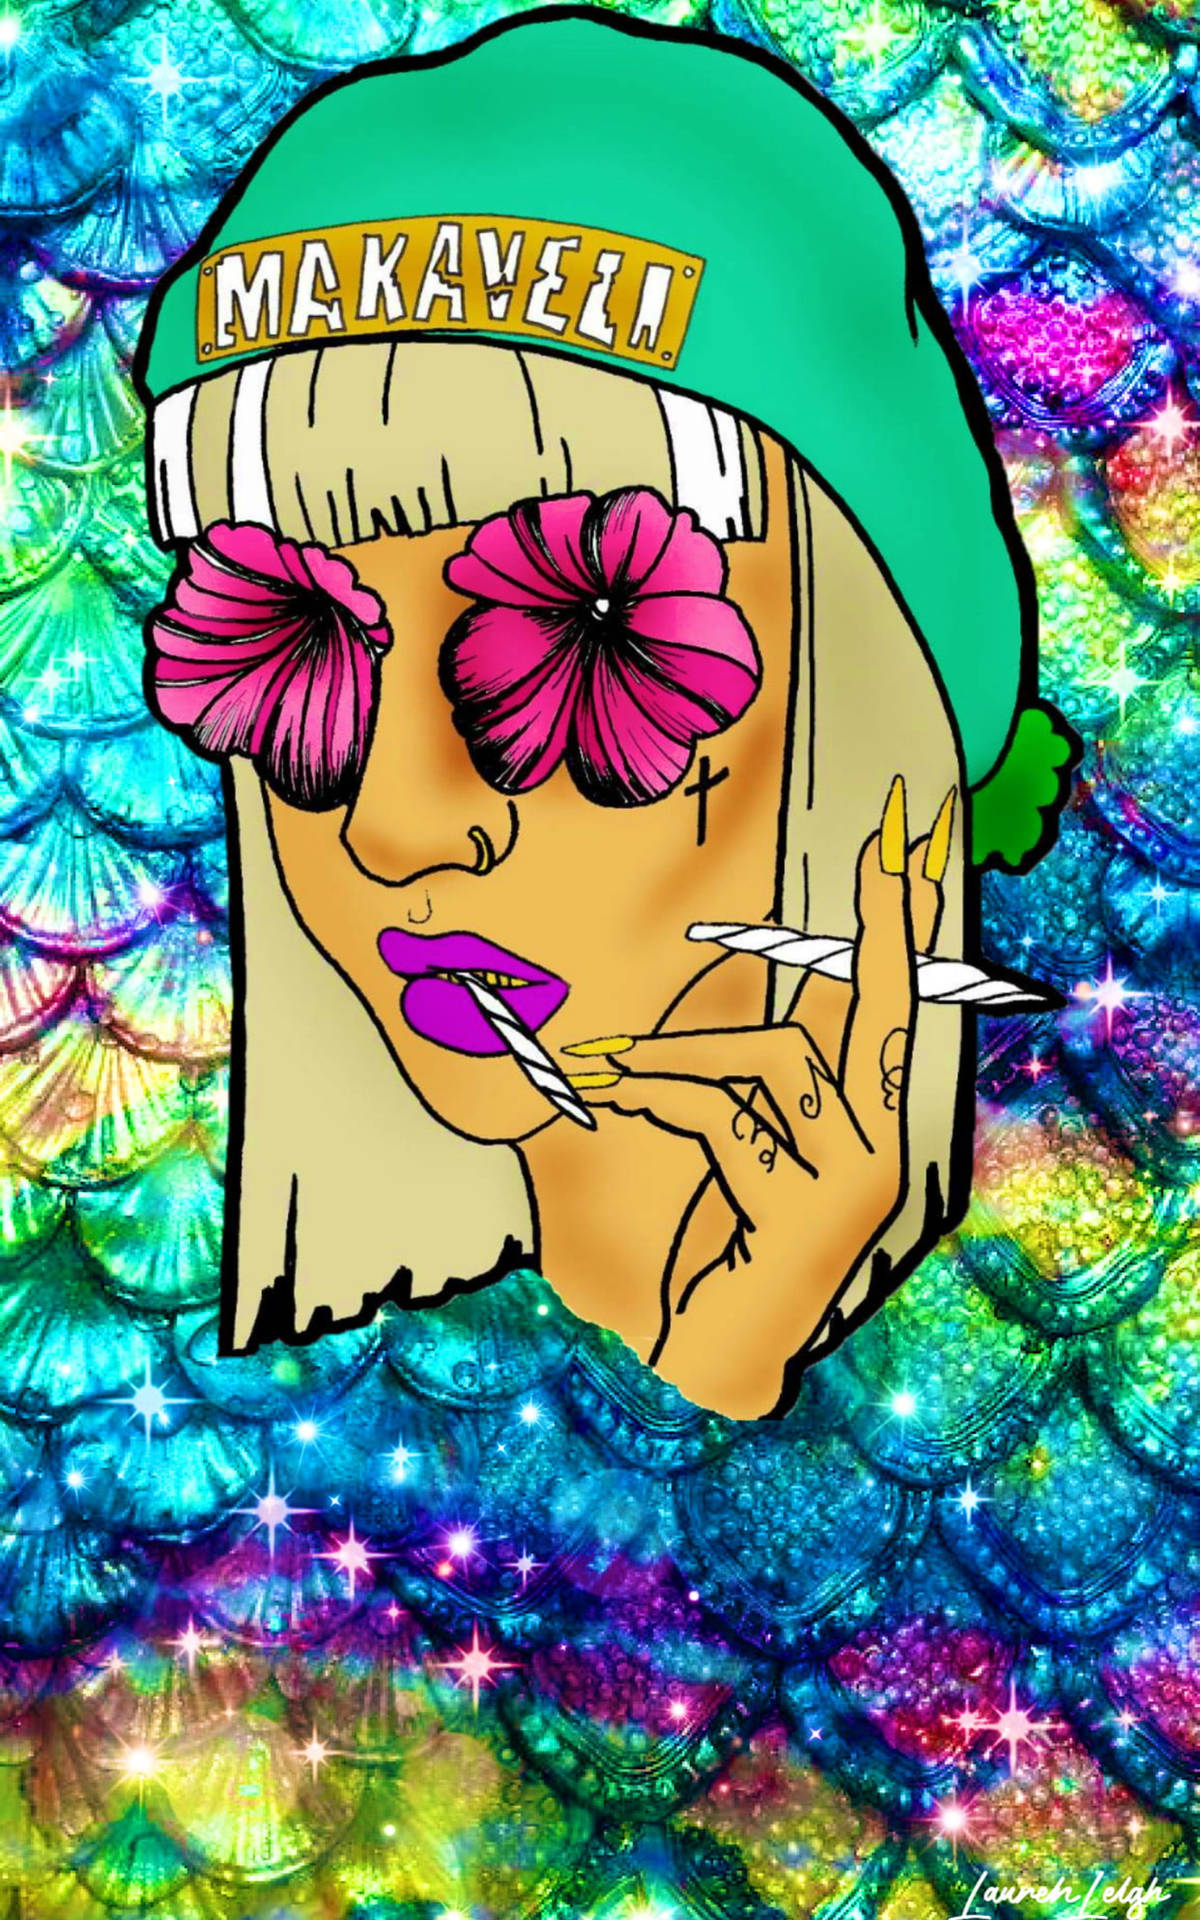 Smoking Weed Getting High Art Wallpaper